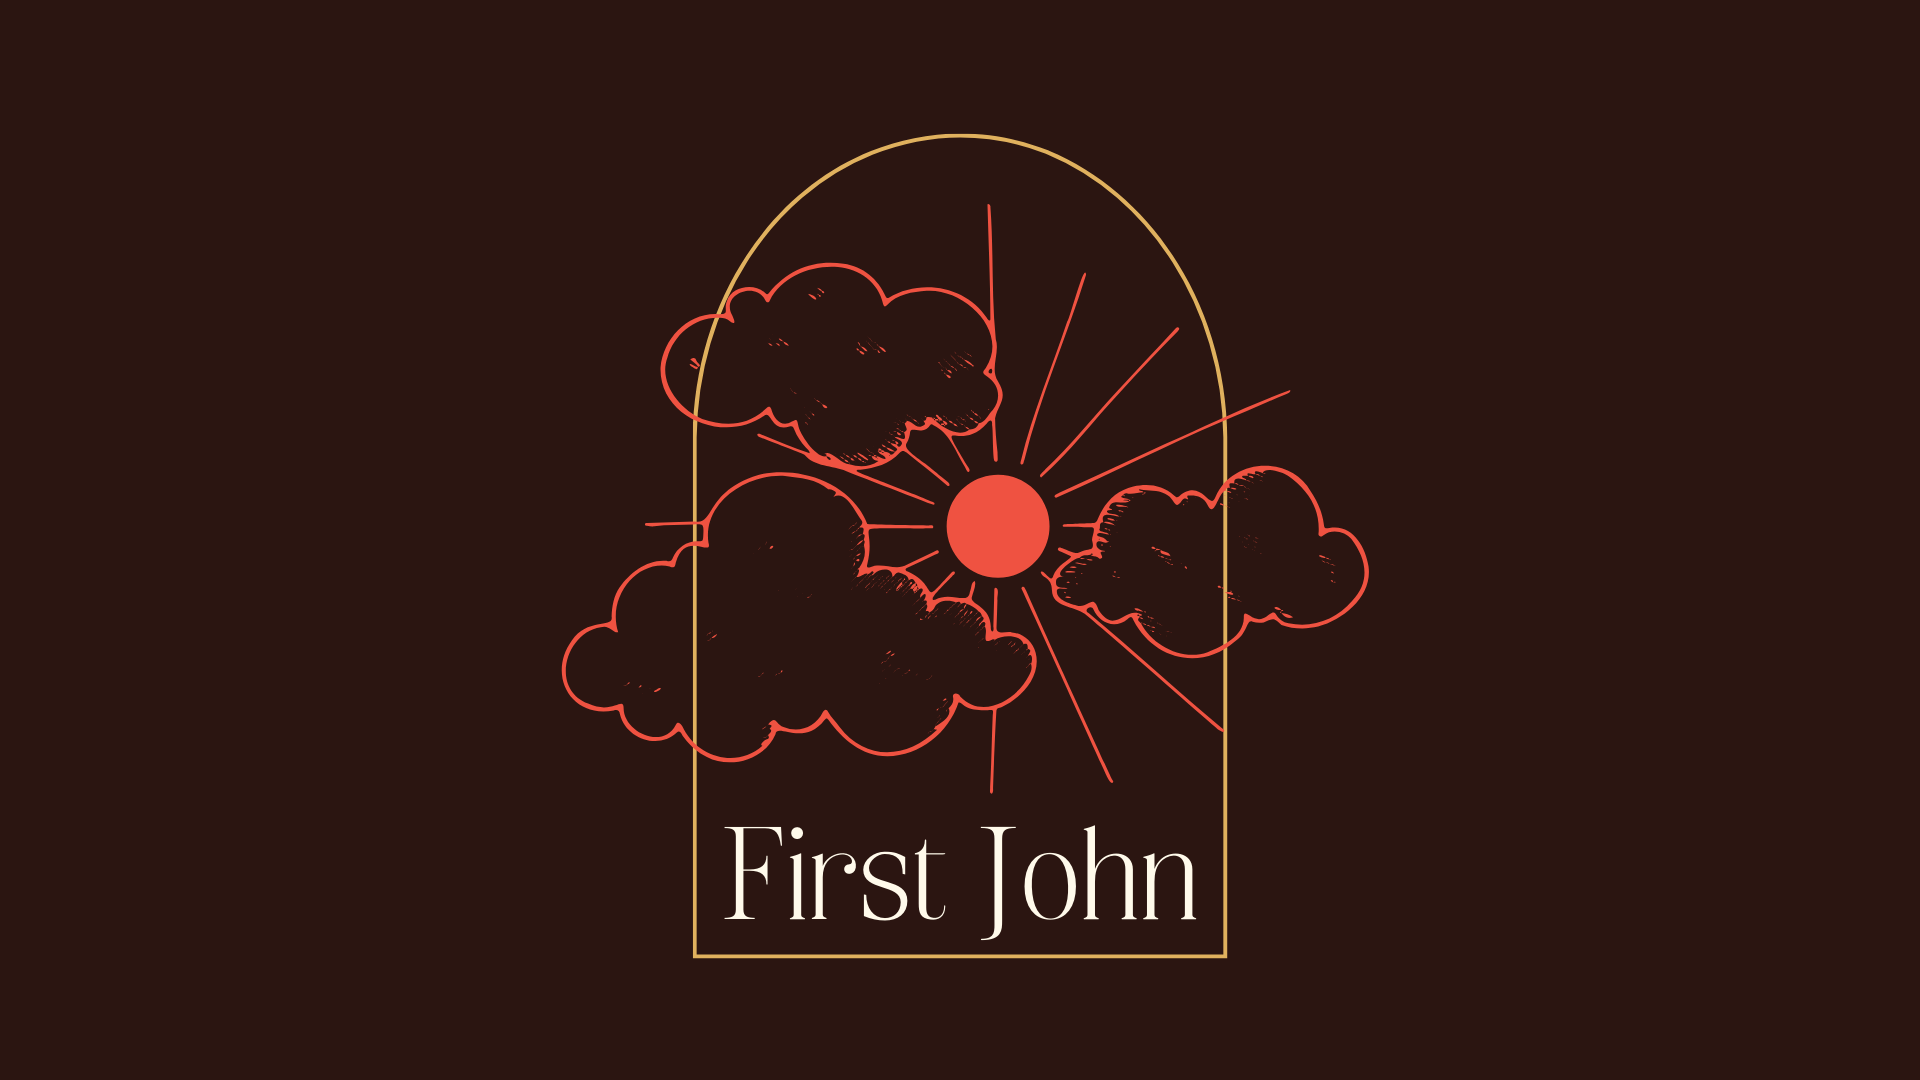 First John banner